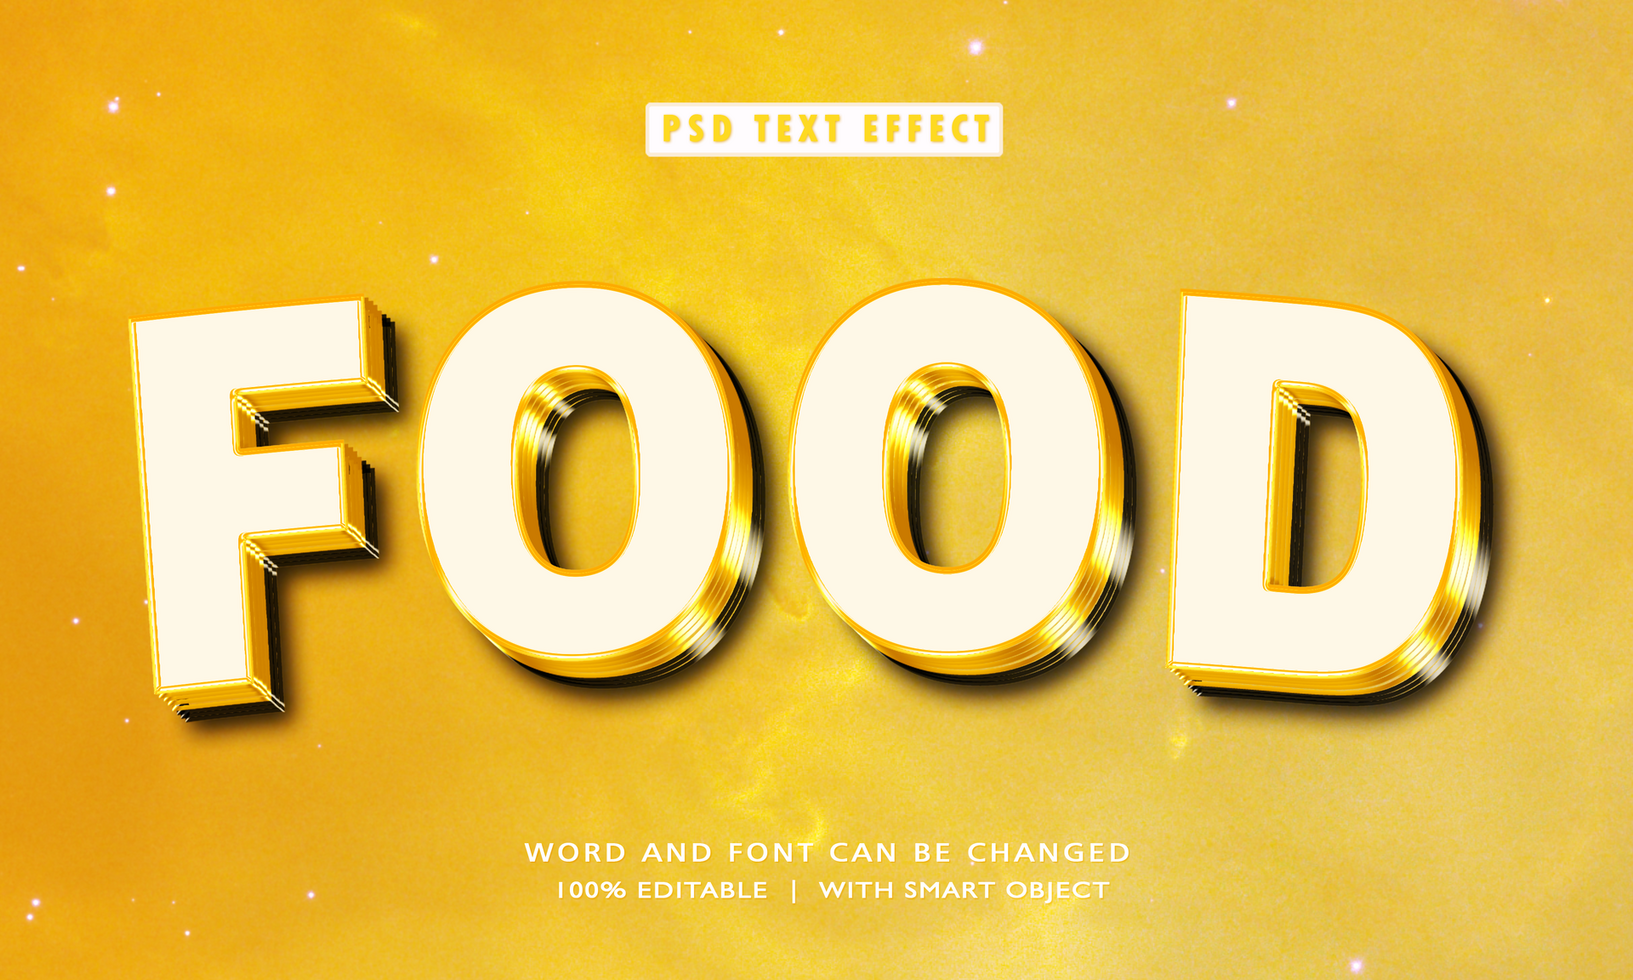 Food 3D Editable Text Effects psd